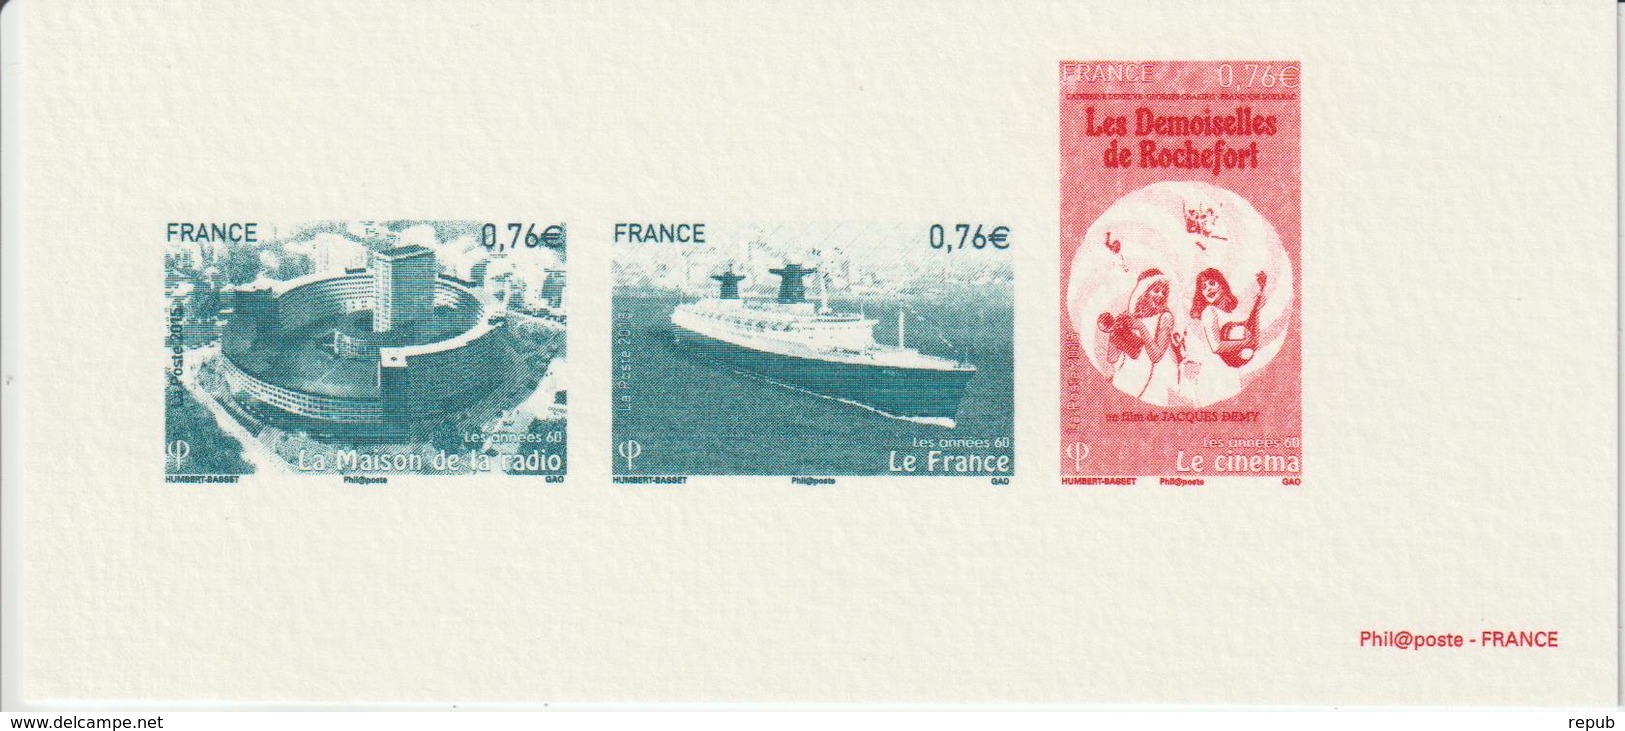 France Mini épreuve 2015 Année 1960 4960-62-64 - Documents Of Postal Services